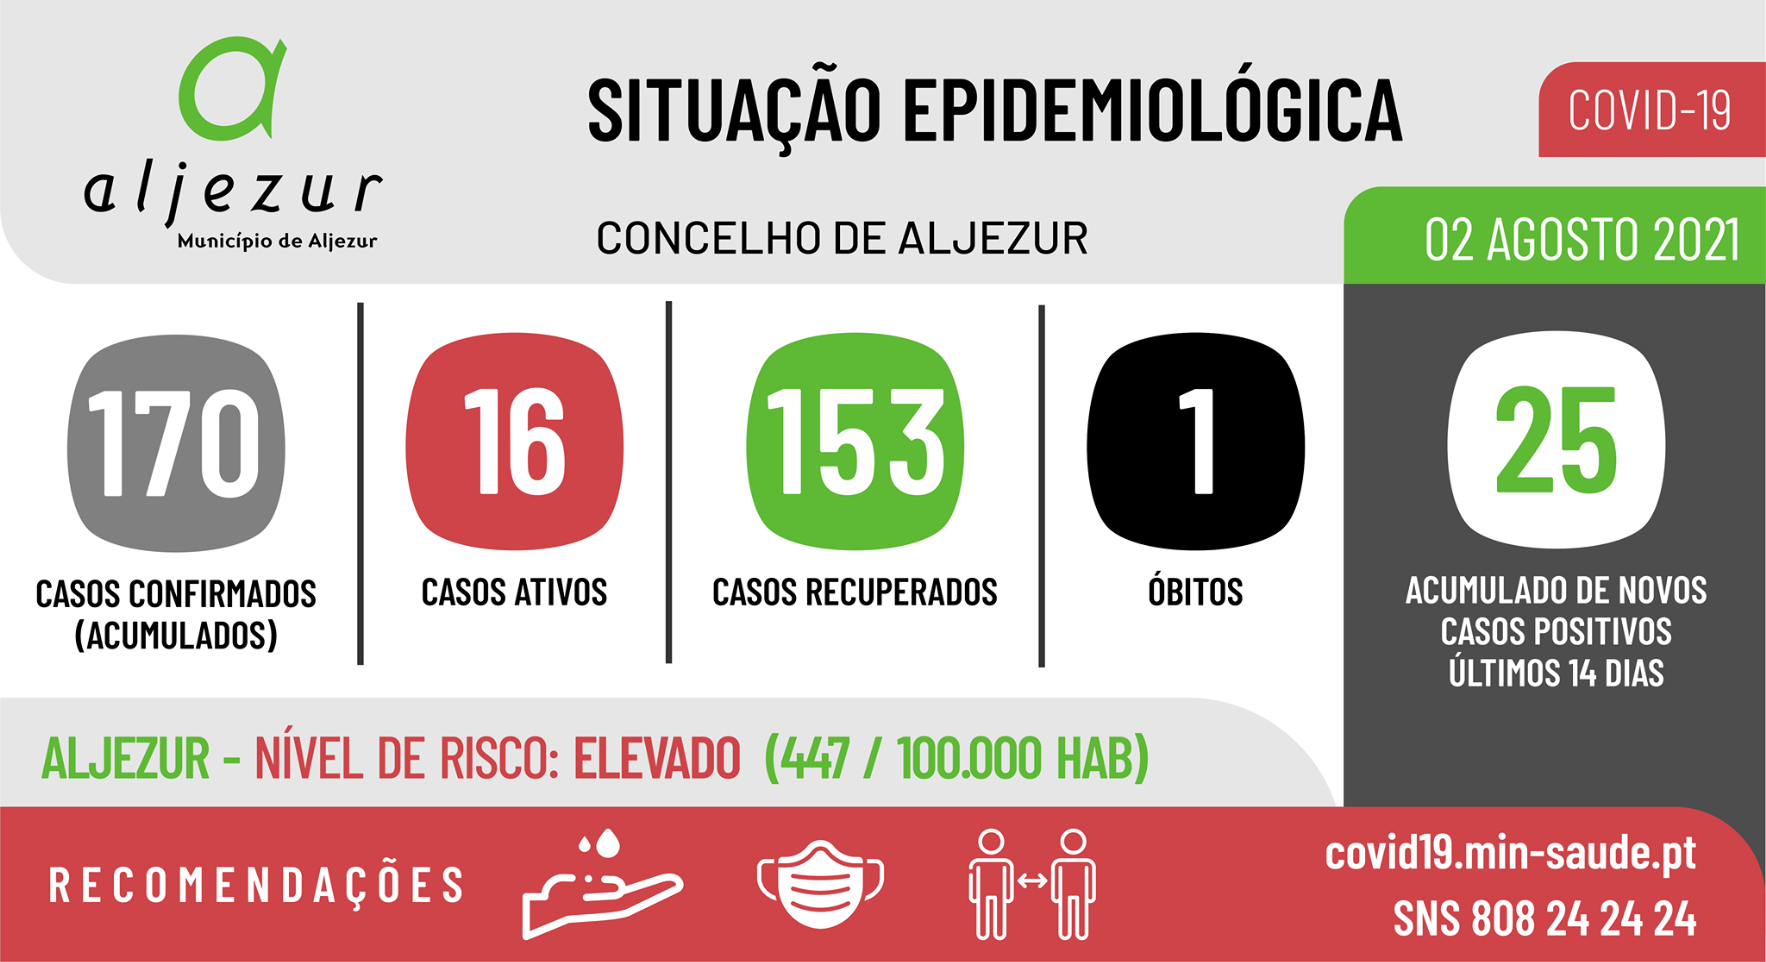 COVID-19: Situação epidemiológica em Aljezur [02/08/2021]